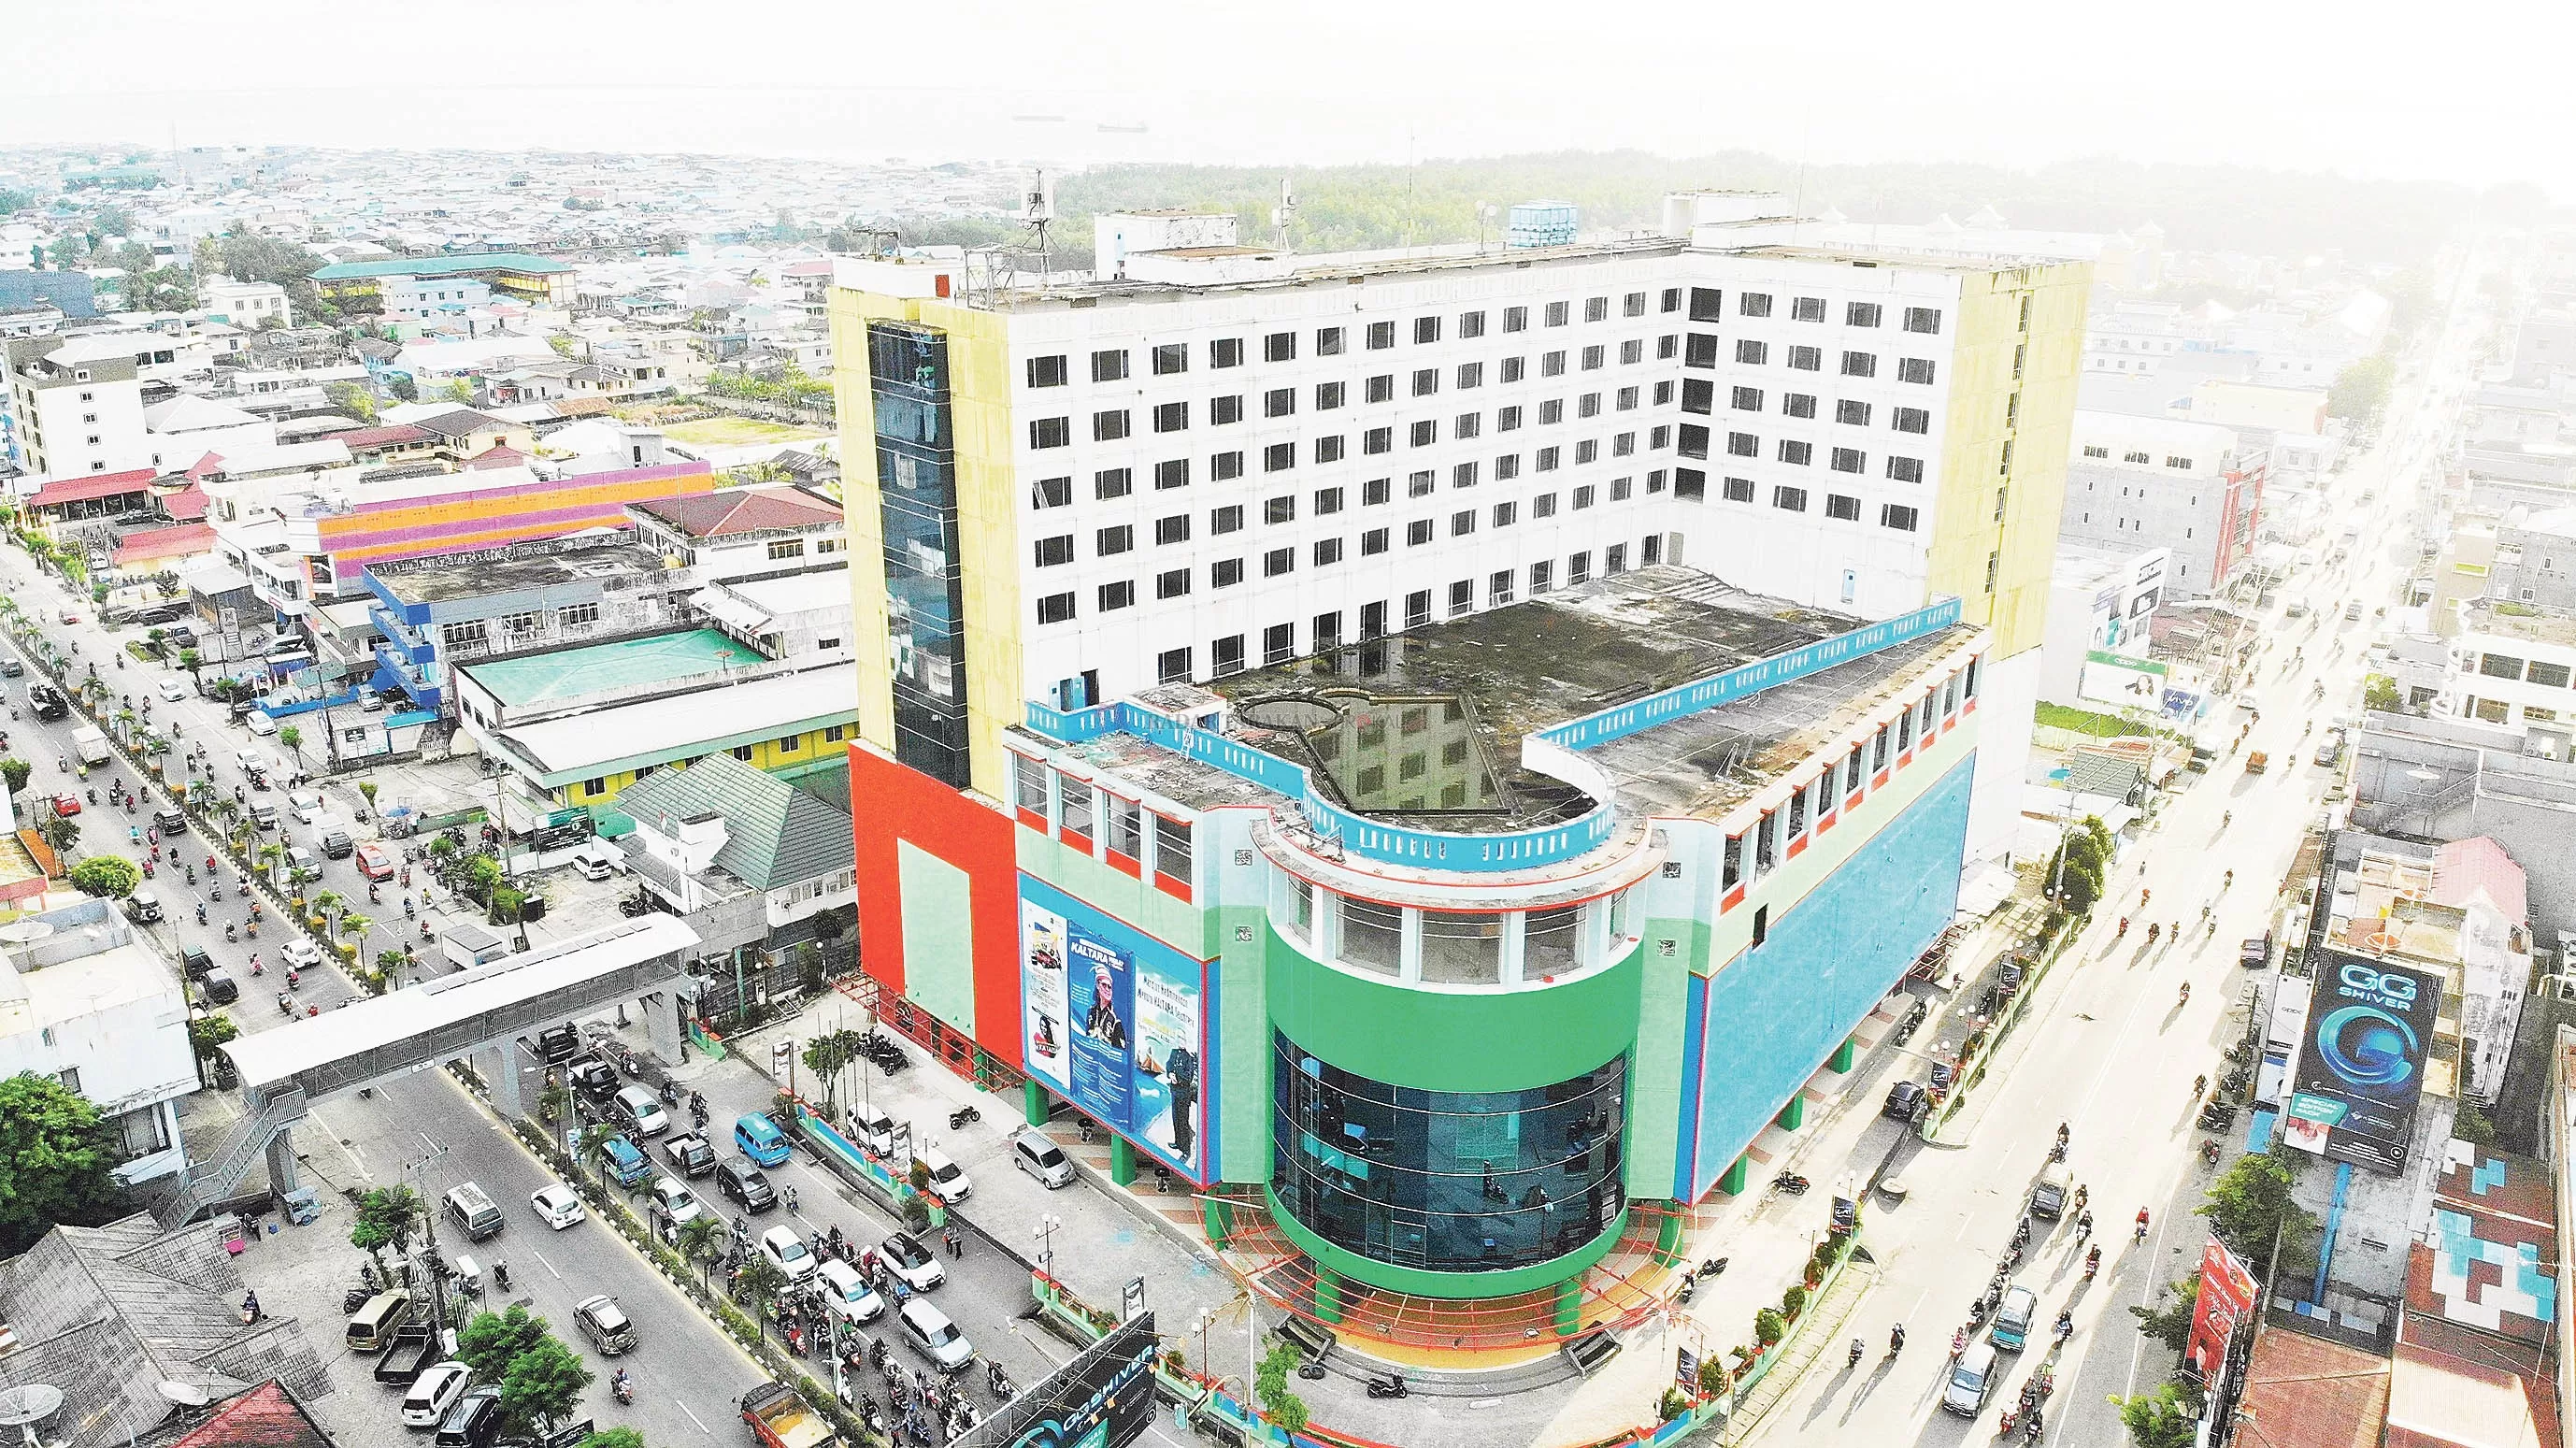 POTENSIAL: Salah satu gedung yang dinilai layak mengemban peran sebagai pusat retail modern di Kaltara.